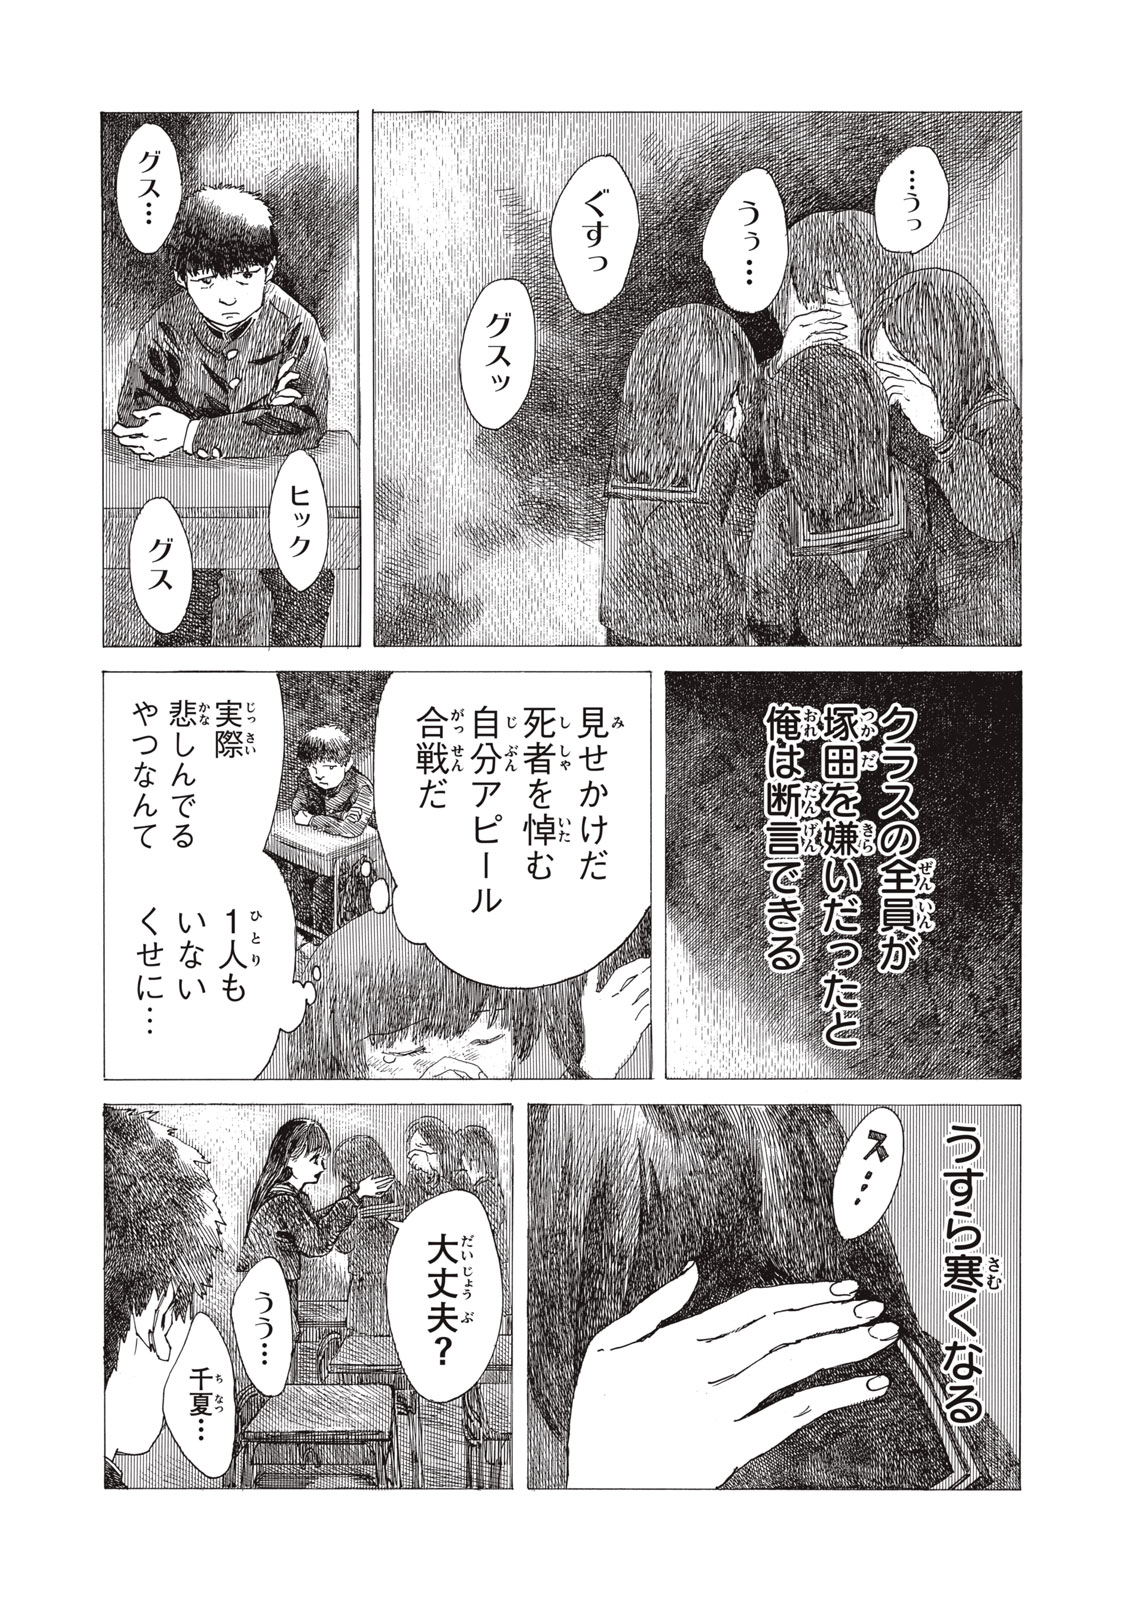 Watashi no Hara no Naka no Bakemono - Chapter 30 - Page 10